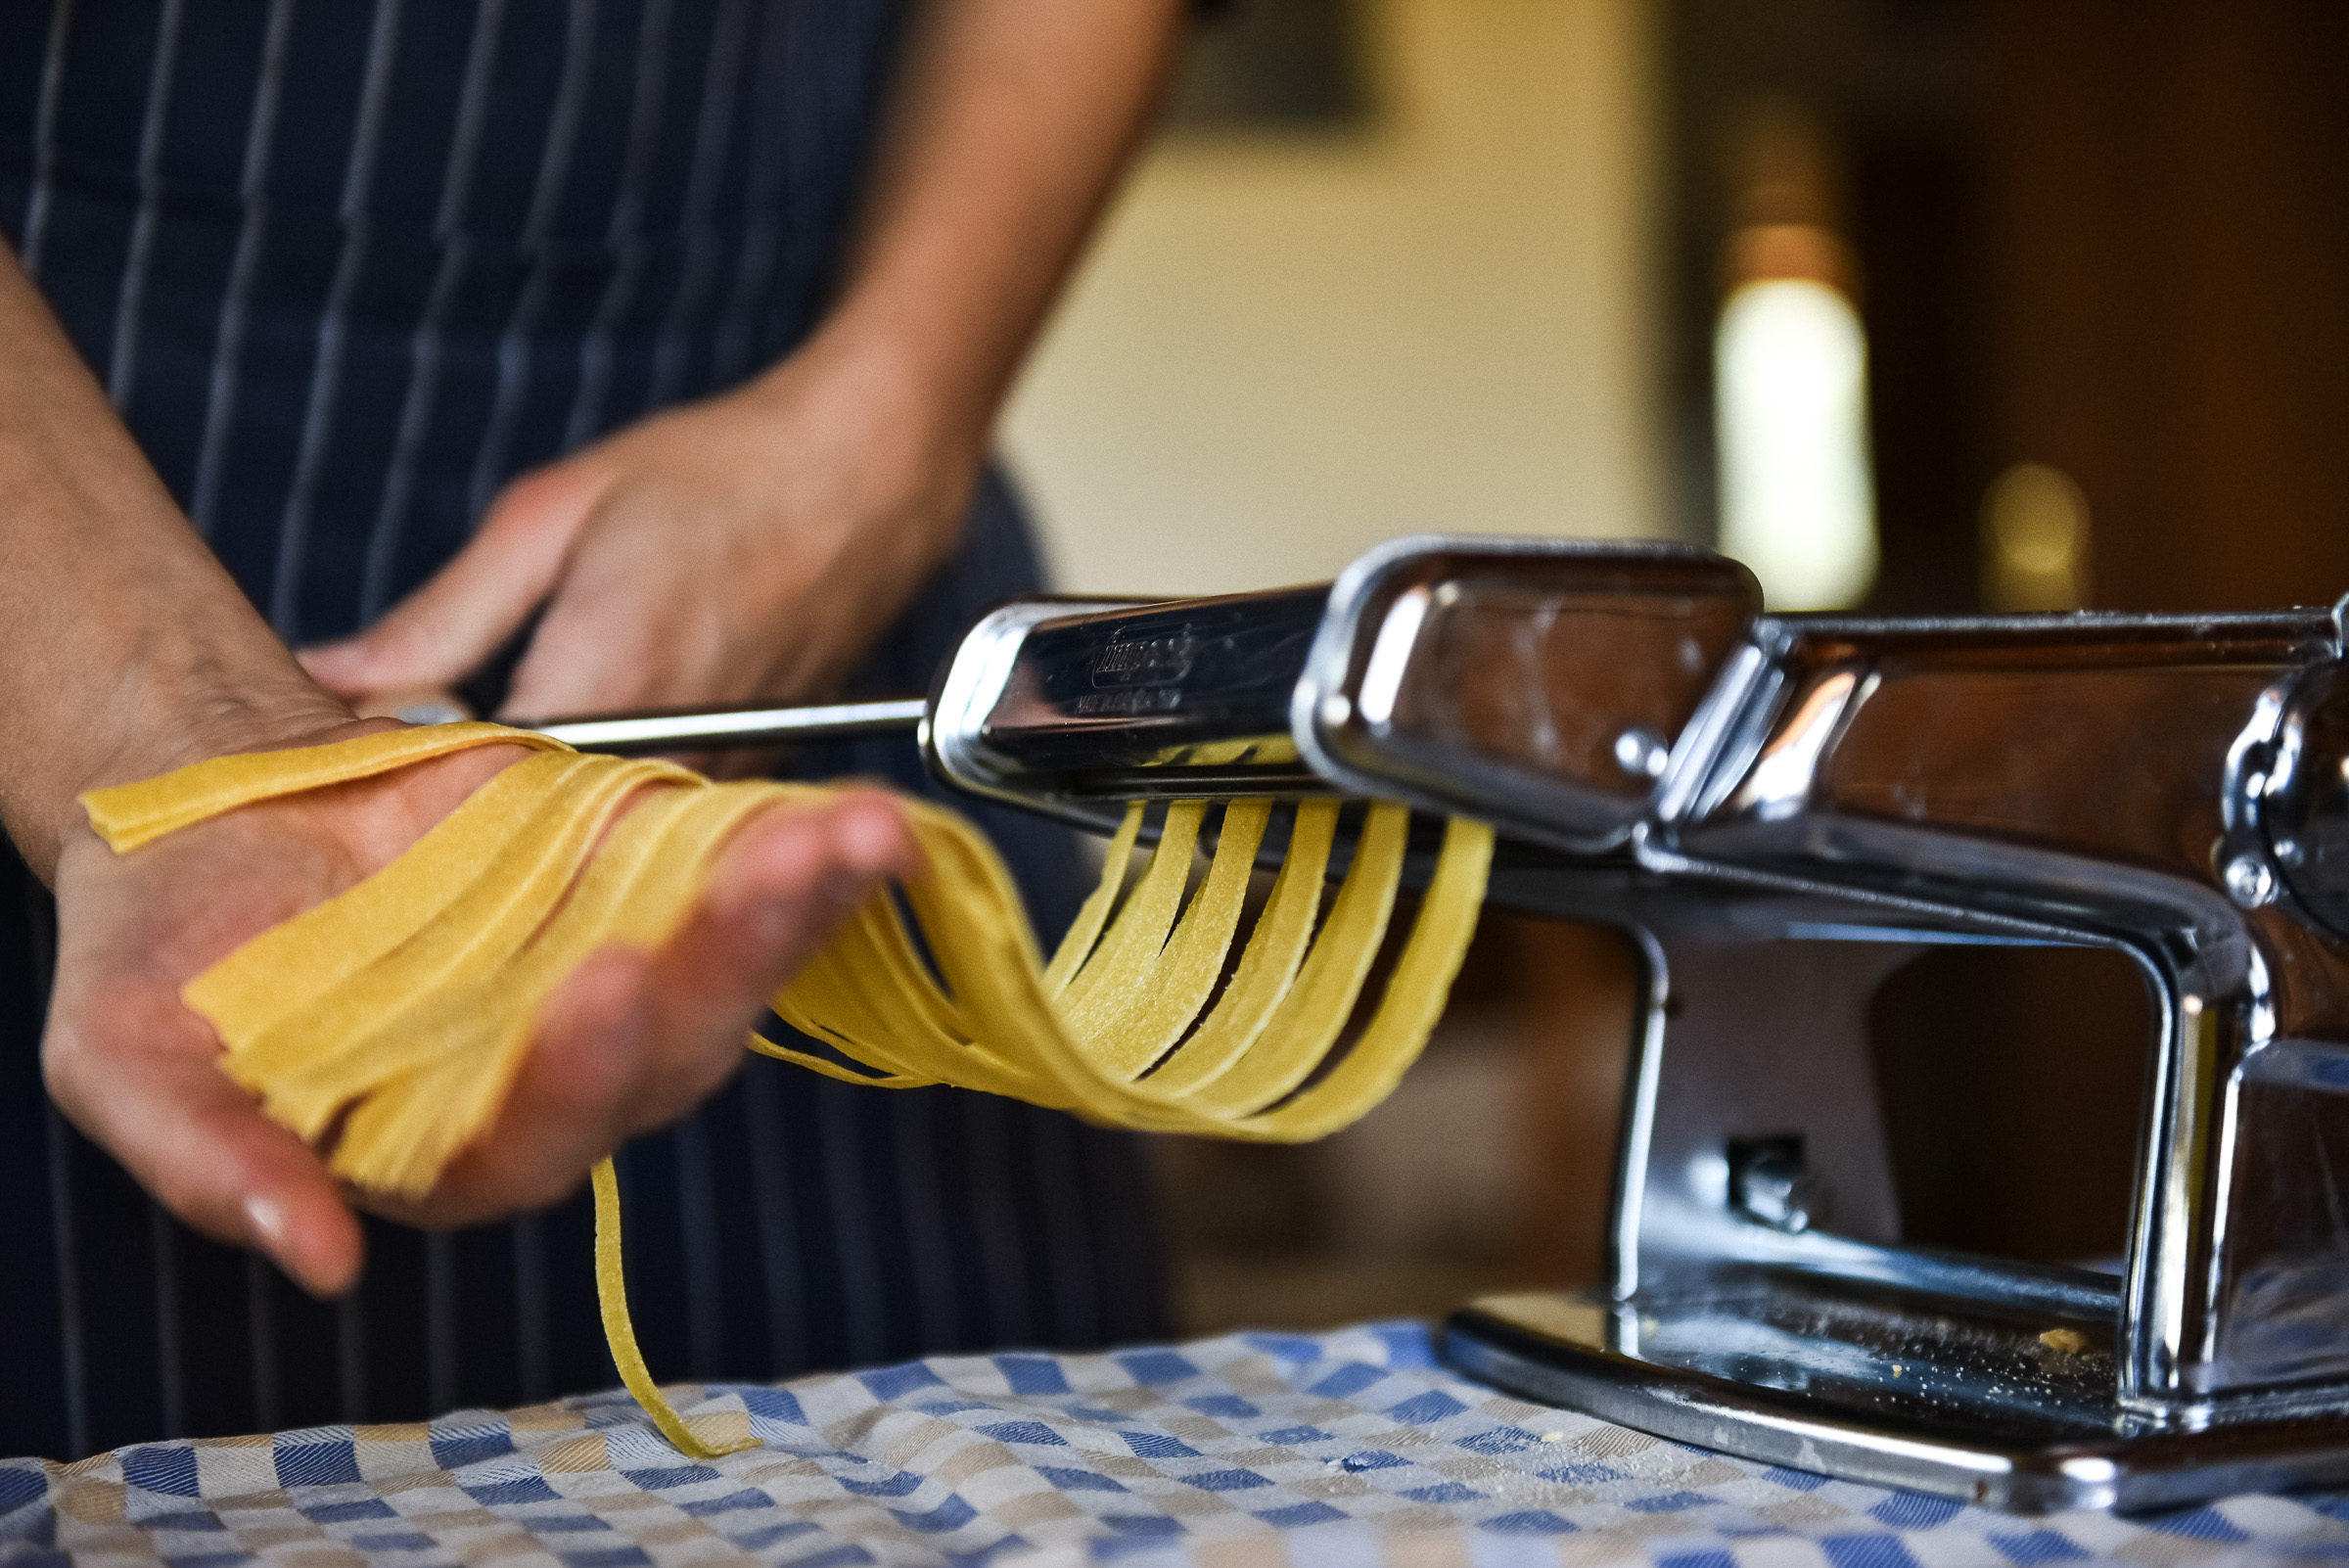 Making_pasta2.jpg